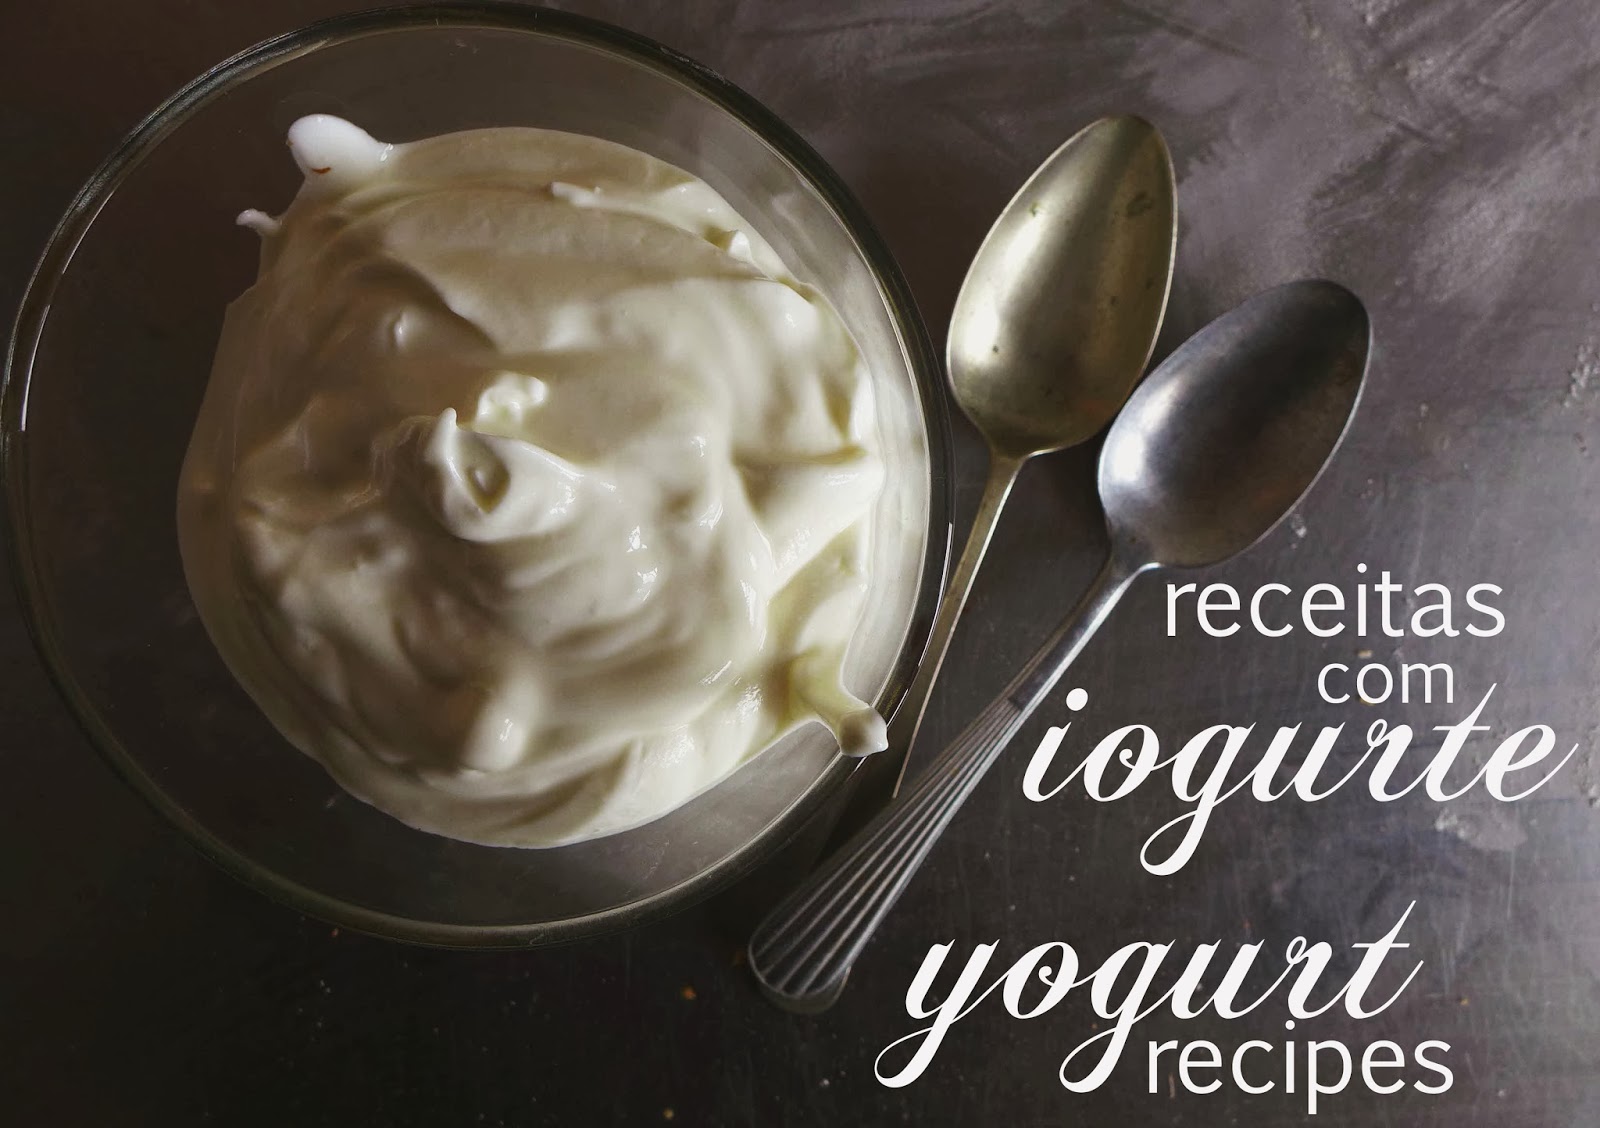 Receitas com Iogurte/ Yogurt recipes